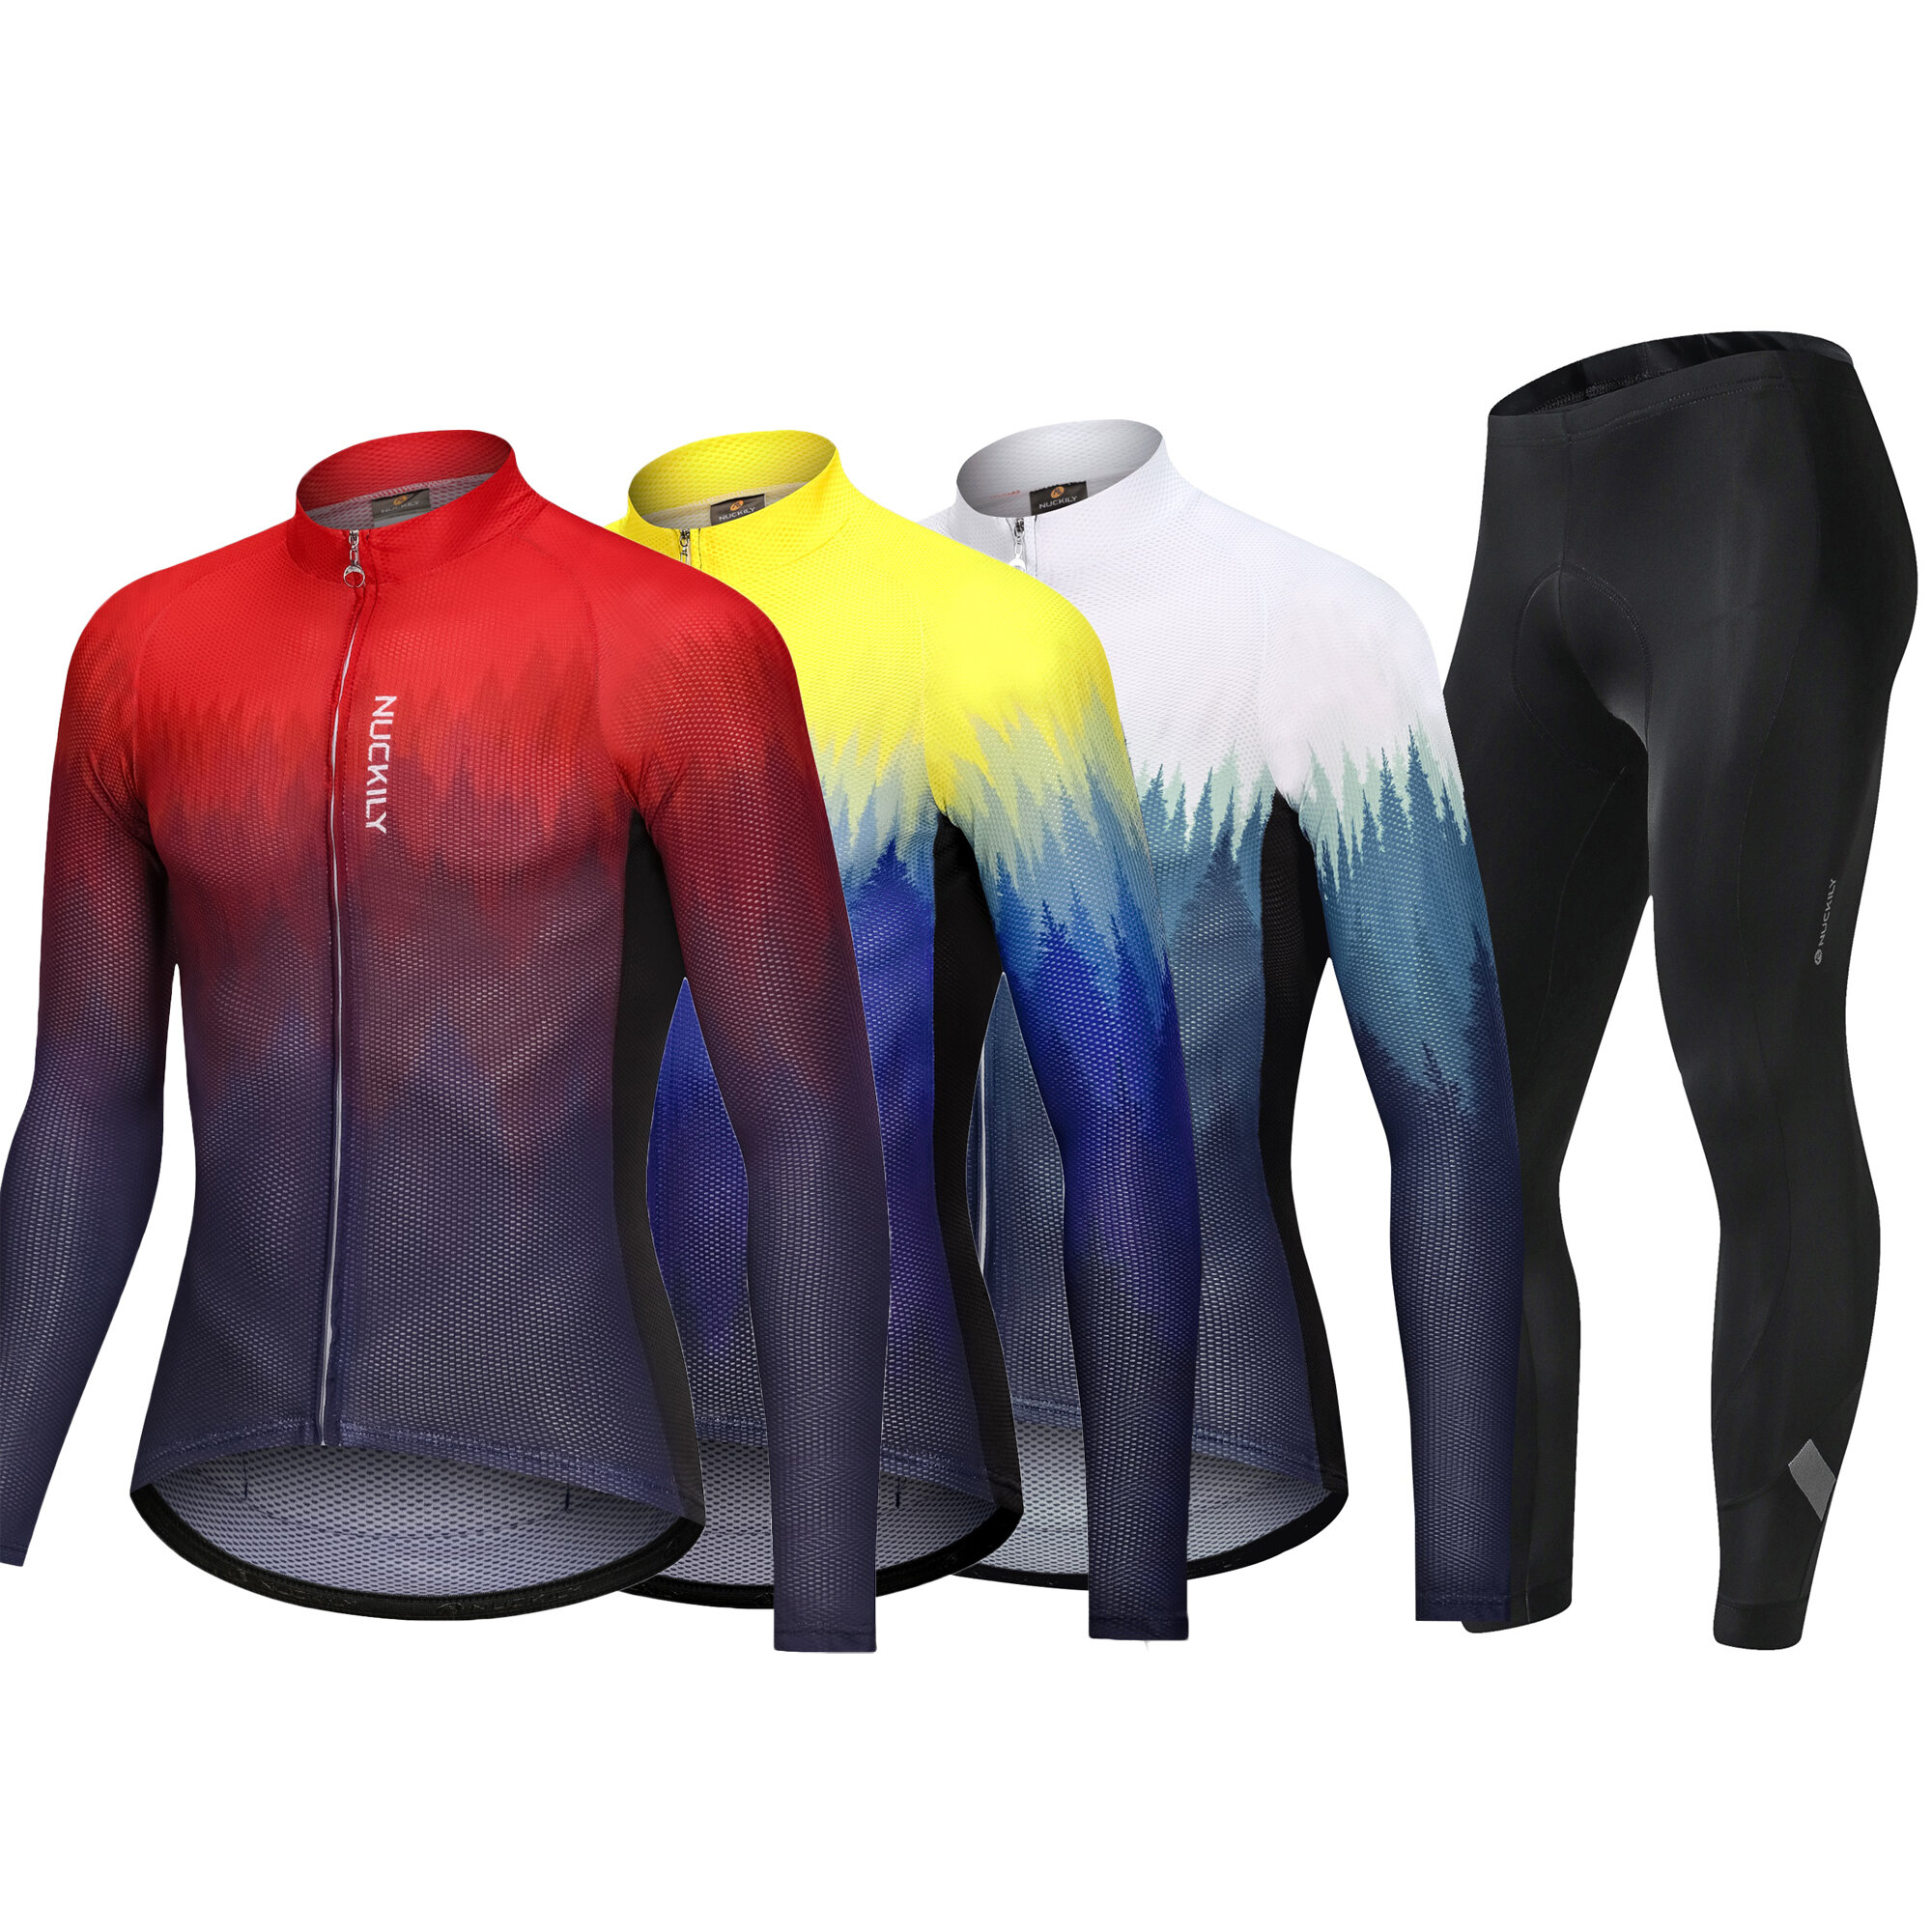 NUCKILY Conjunto de ropa de bicicleta profesional para hombre con almohadilla transpirable Gel Color degradado Mujer Ropa de bicicleta de carretera Traje deportivo Jersey de ciclismo